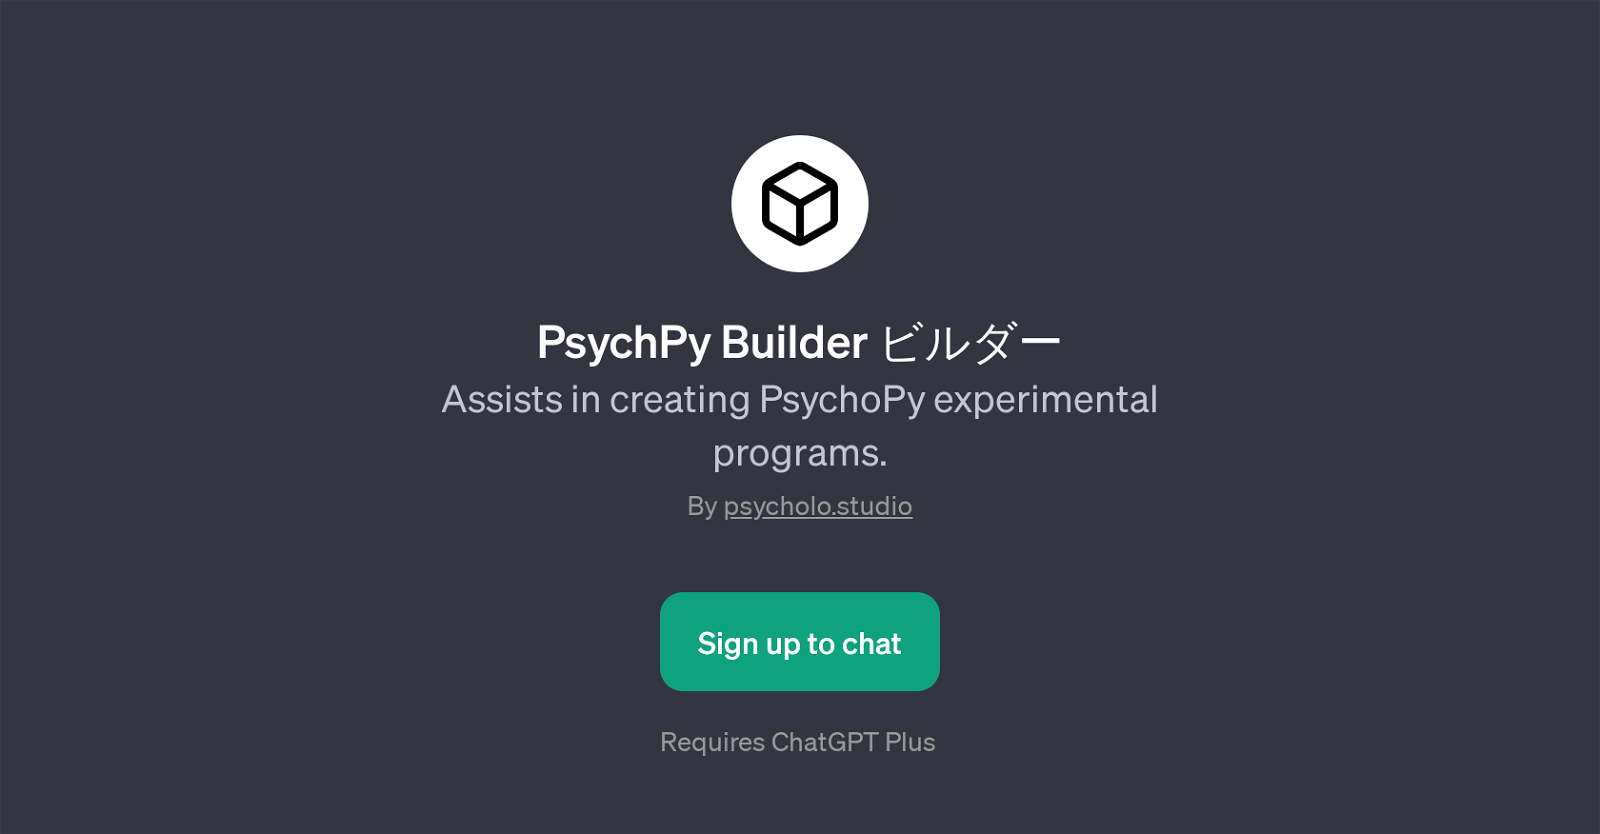 PsychPy Builder website